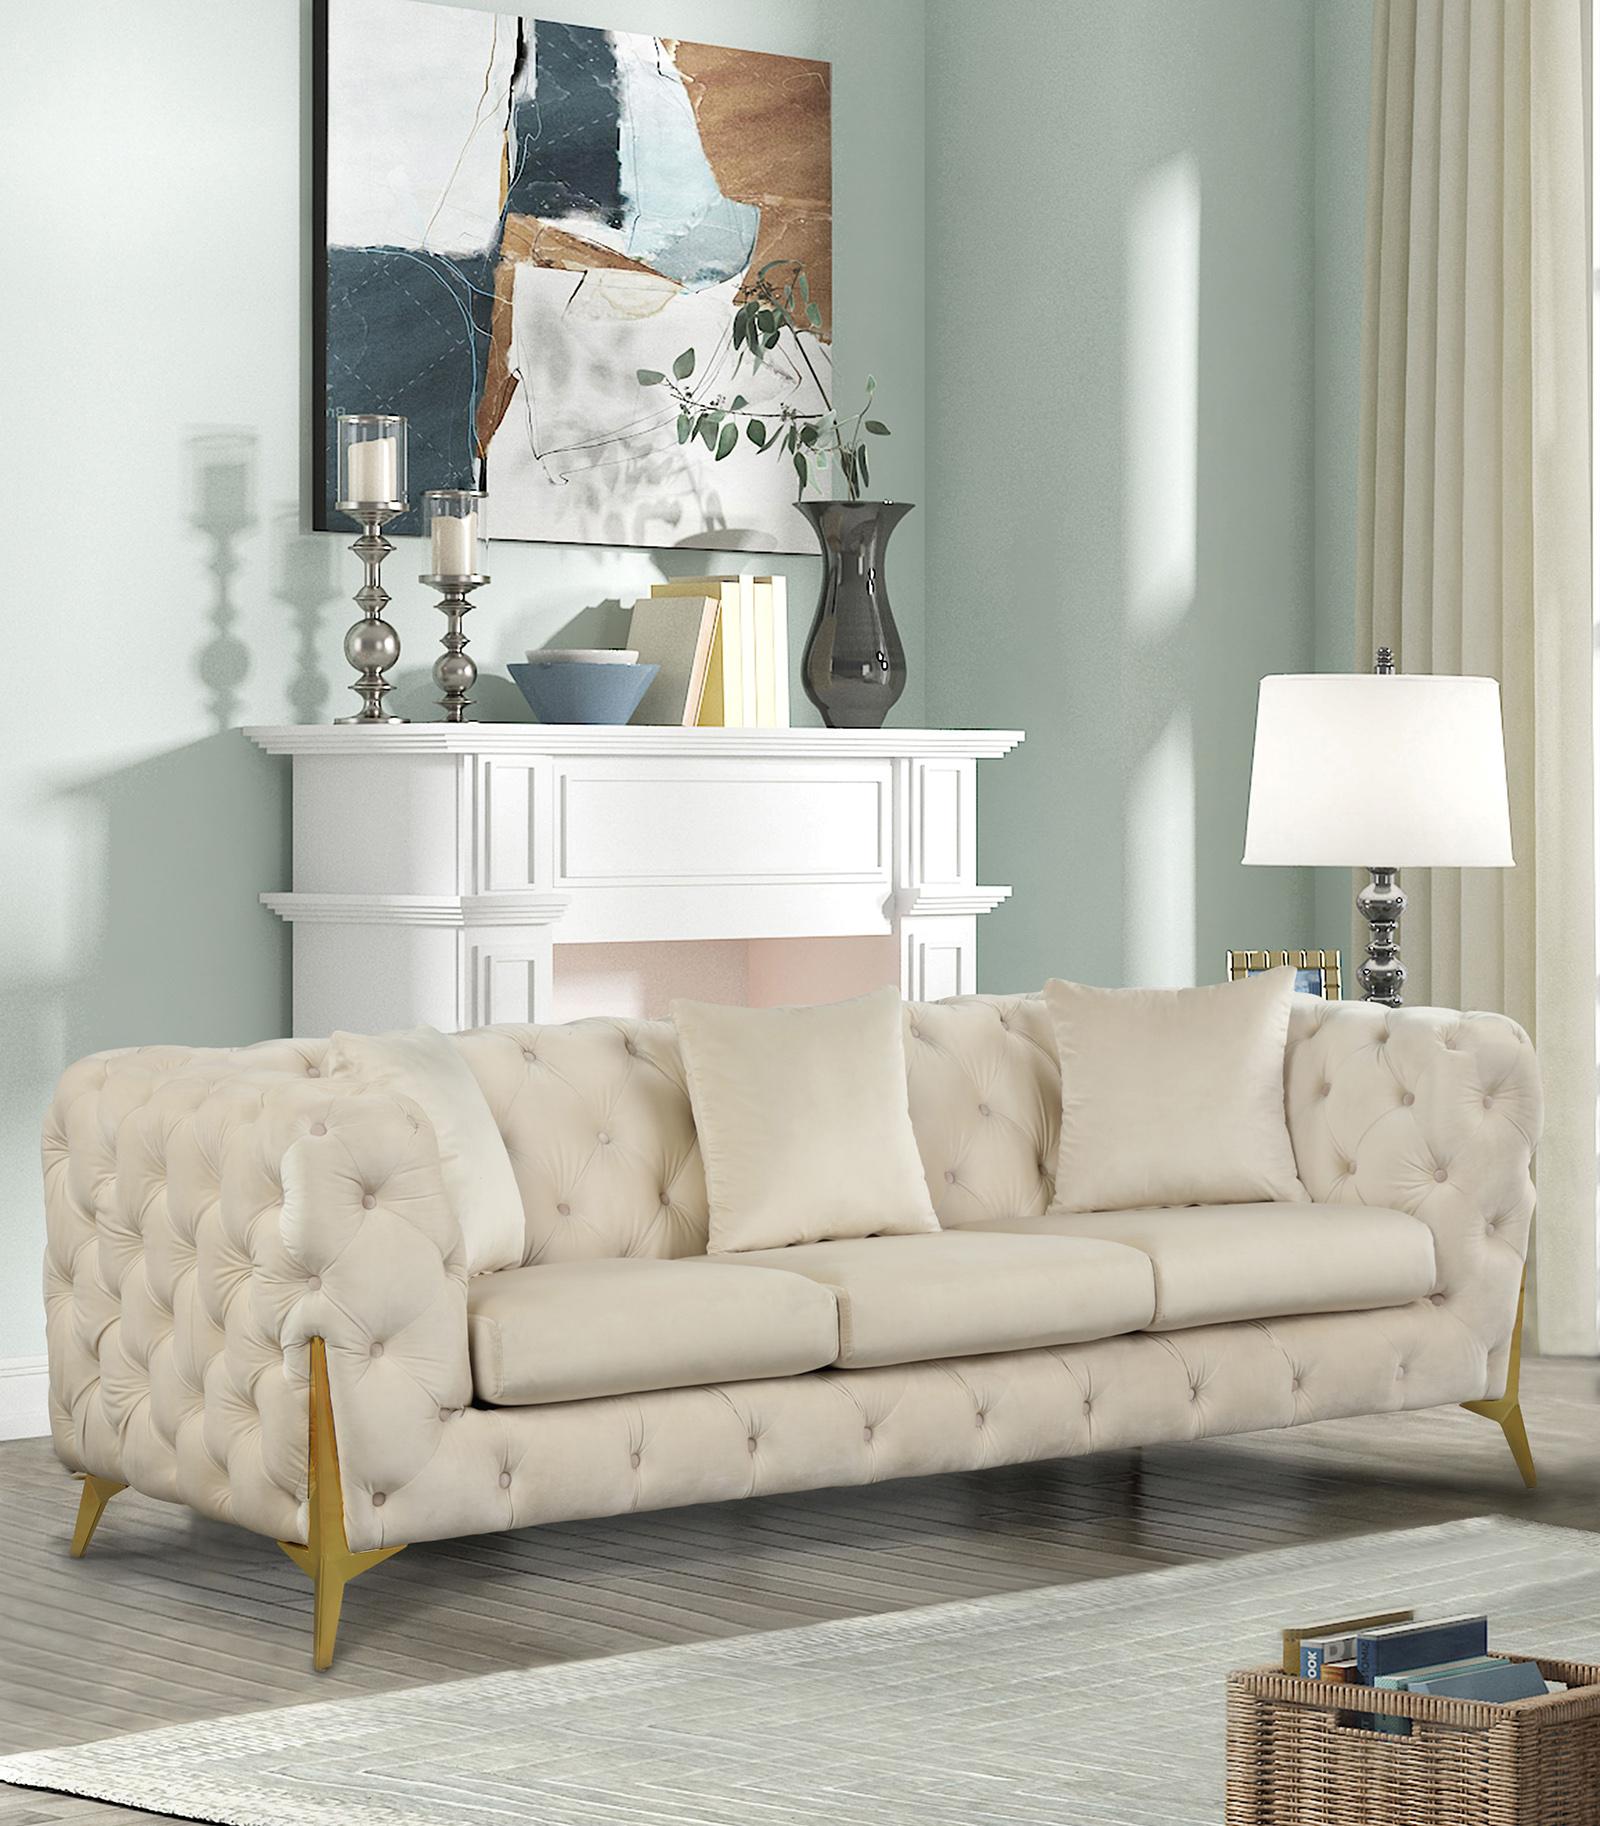 

    
Meridian Furniture KINGDOM 695Cream-S Sofa Set Cream 695Cream-S-Set-3
